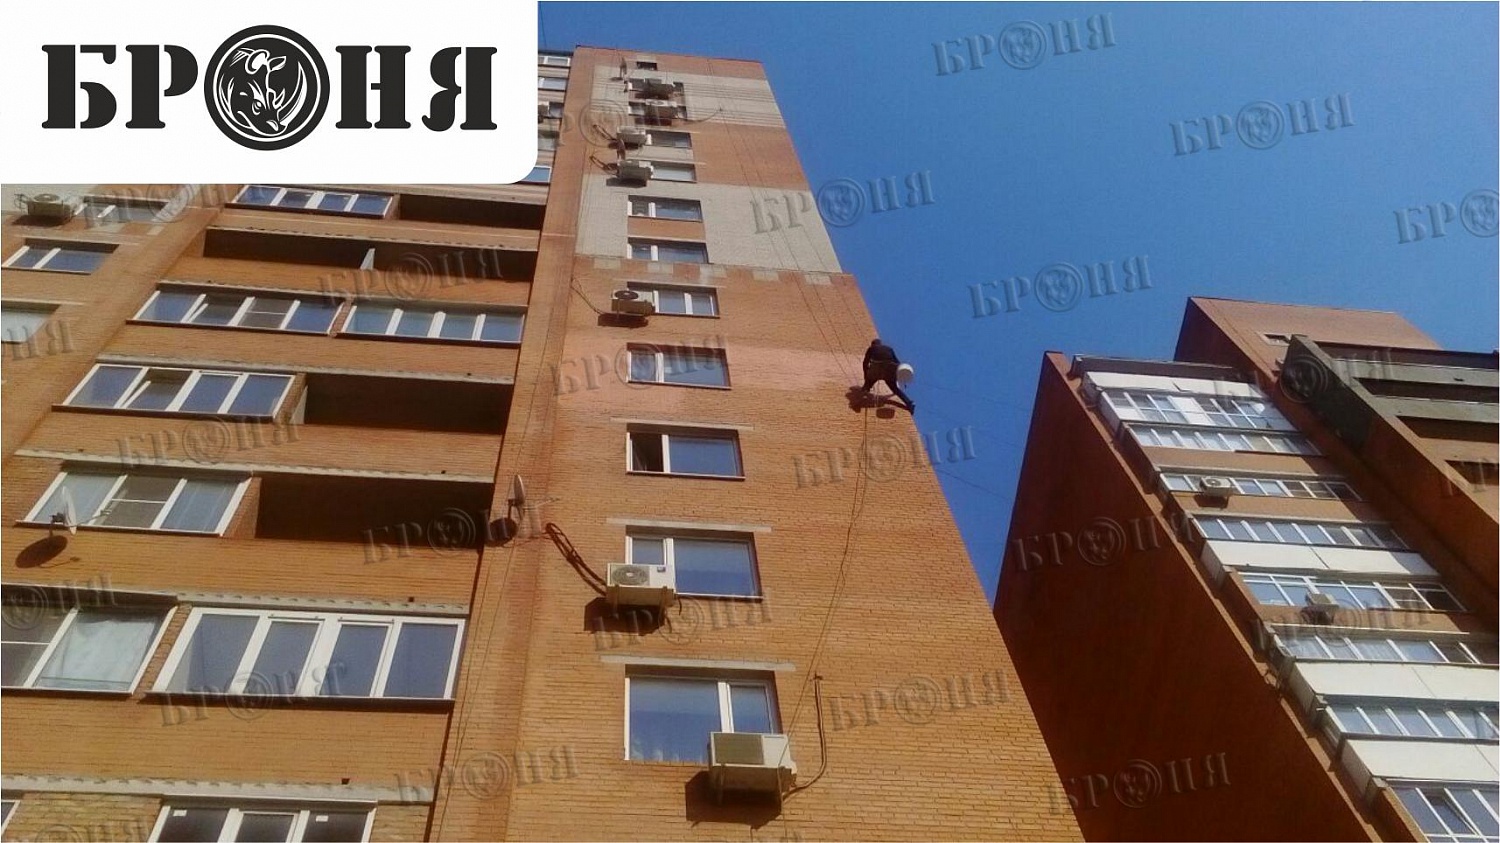 Ростов-на-Дону, утепление частной квартиры многоэтажного жилого дома